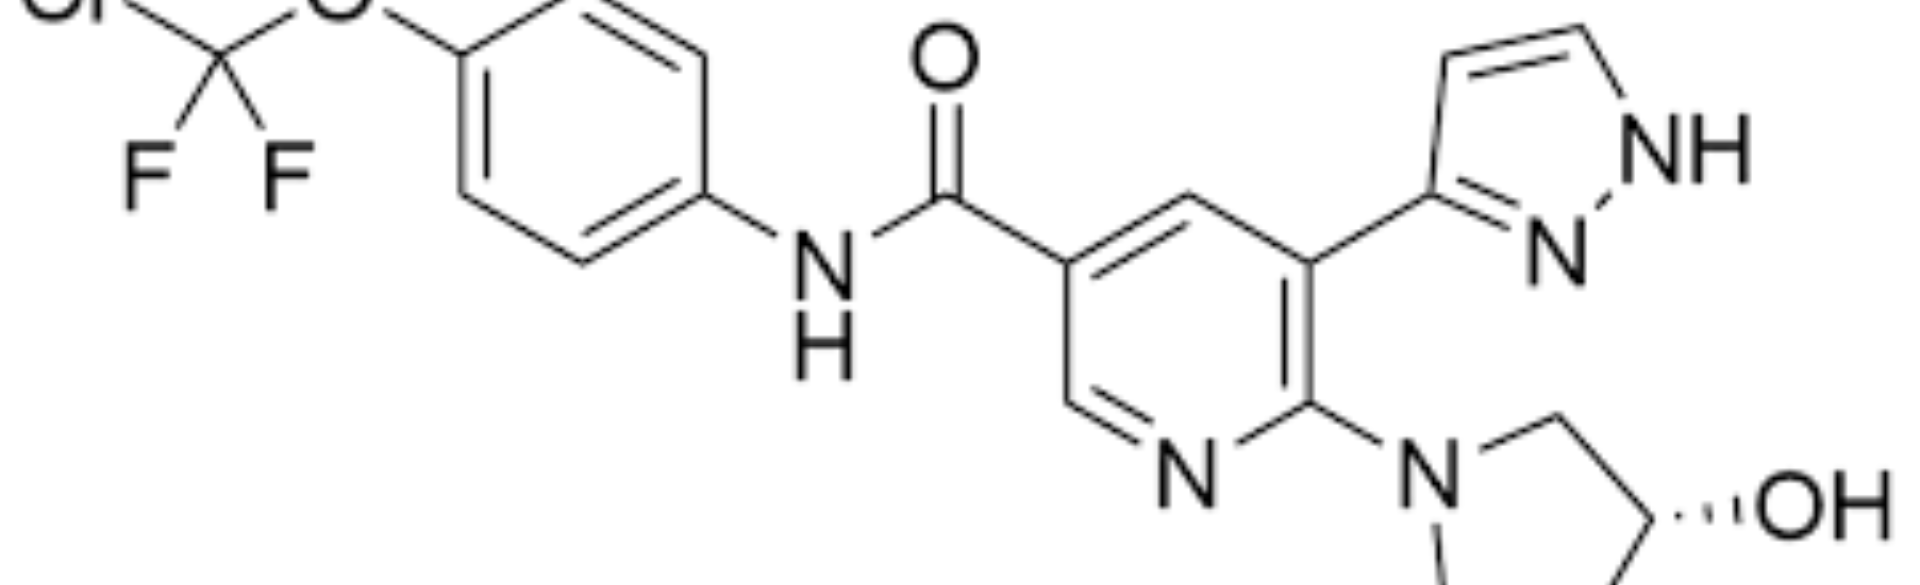 asciminib chemical diagram